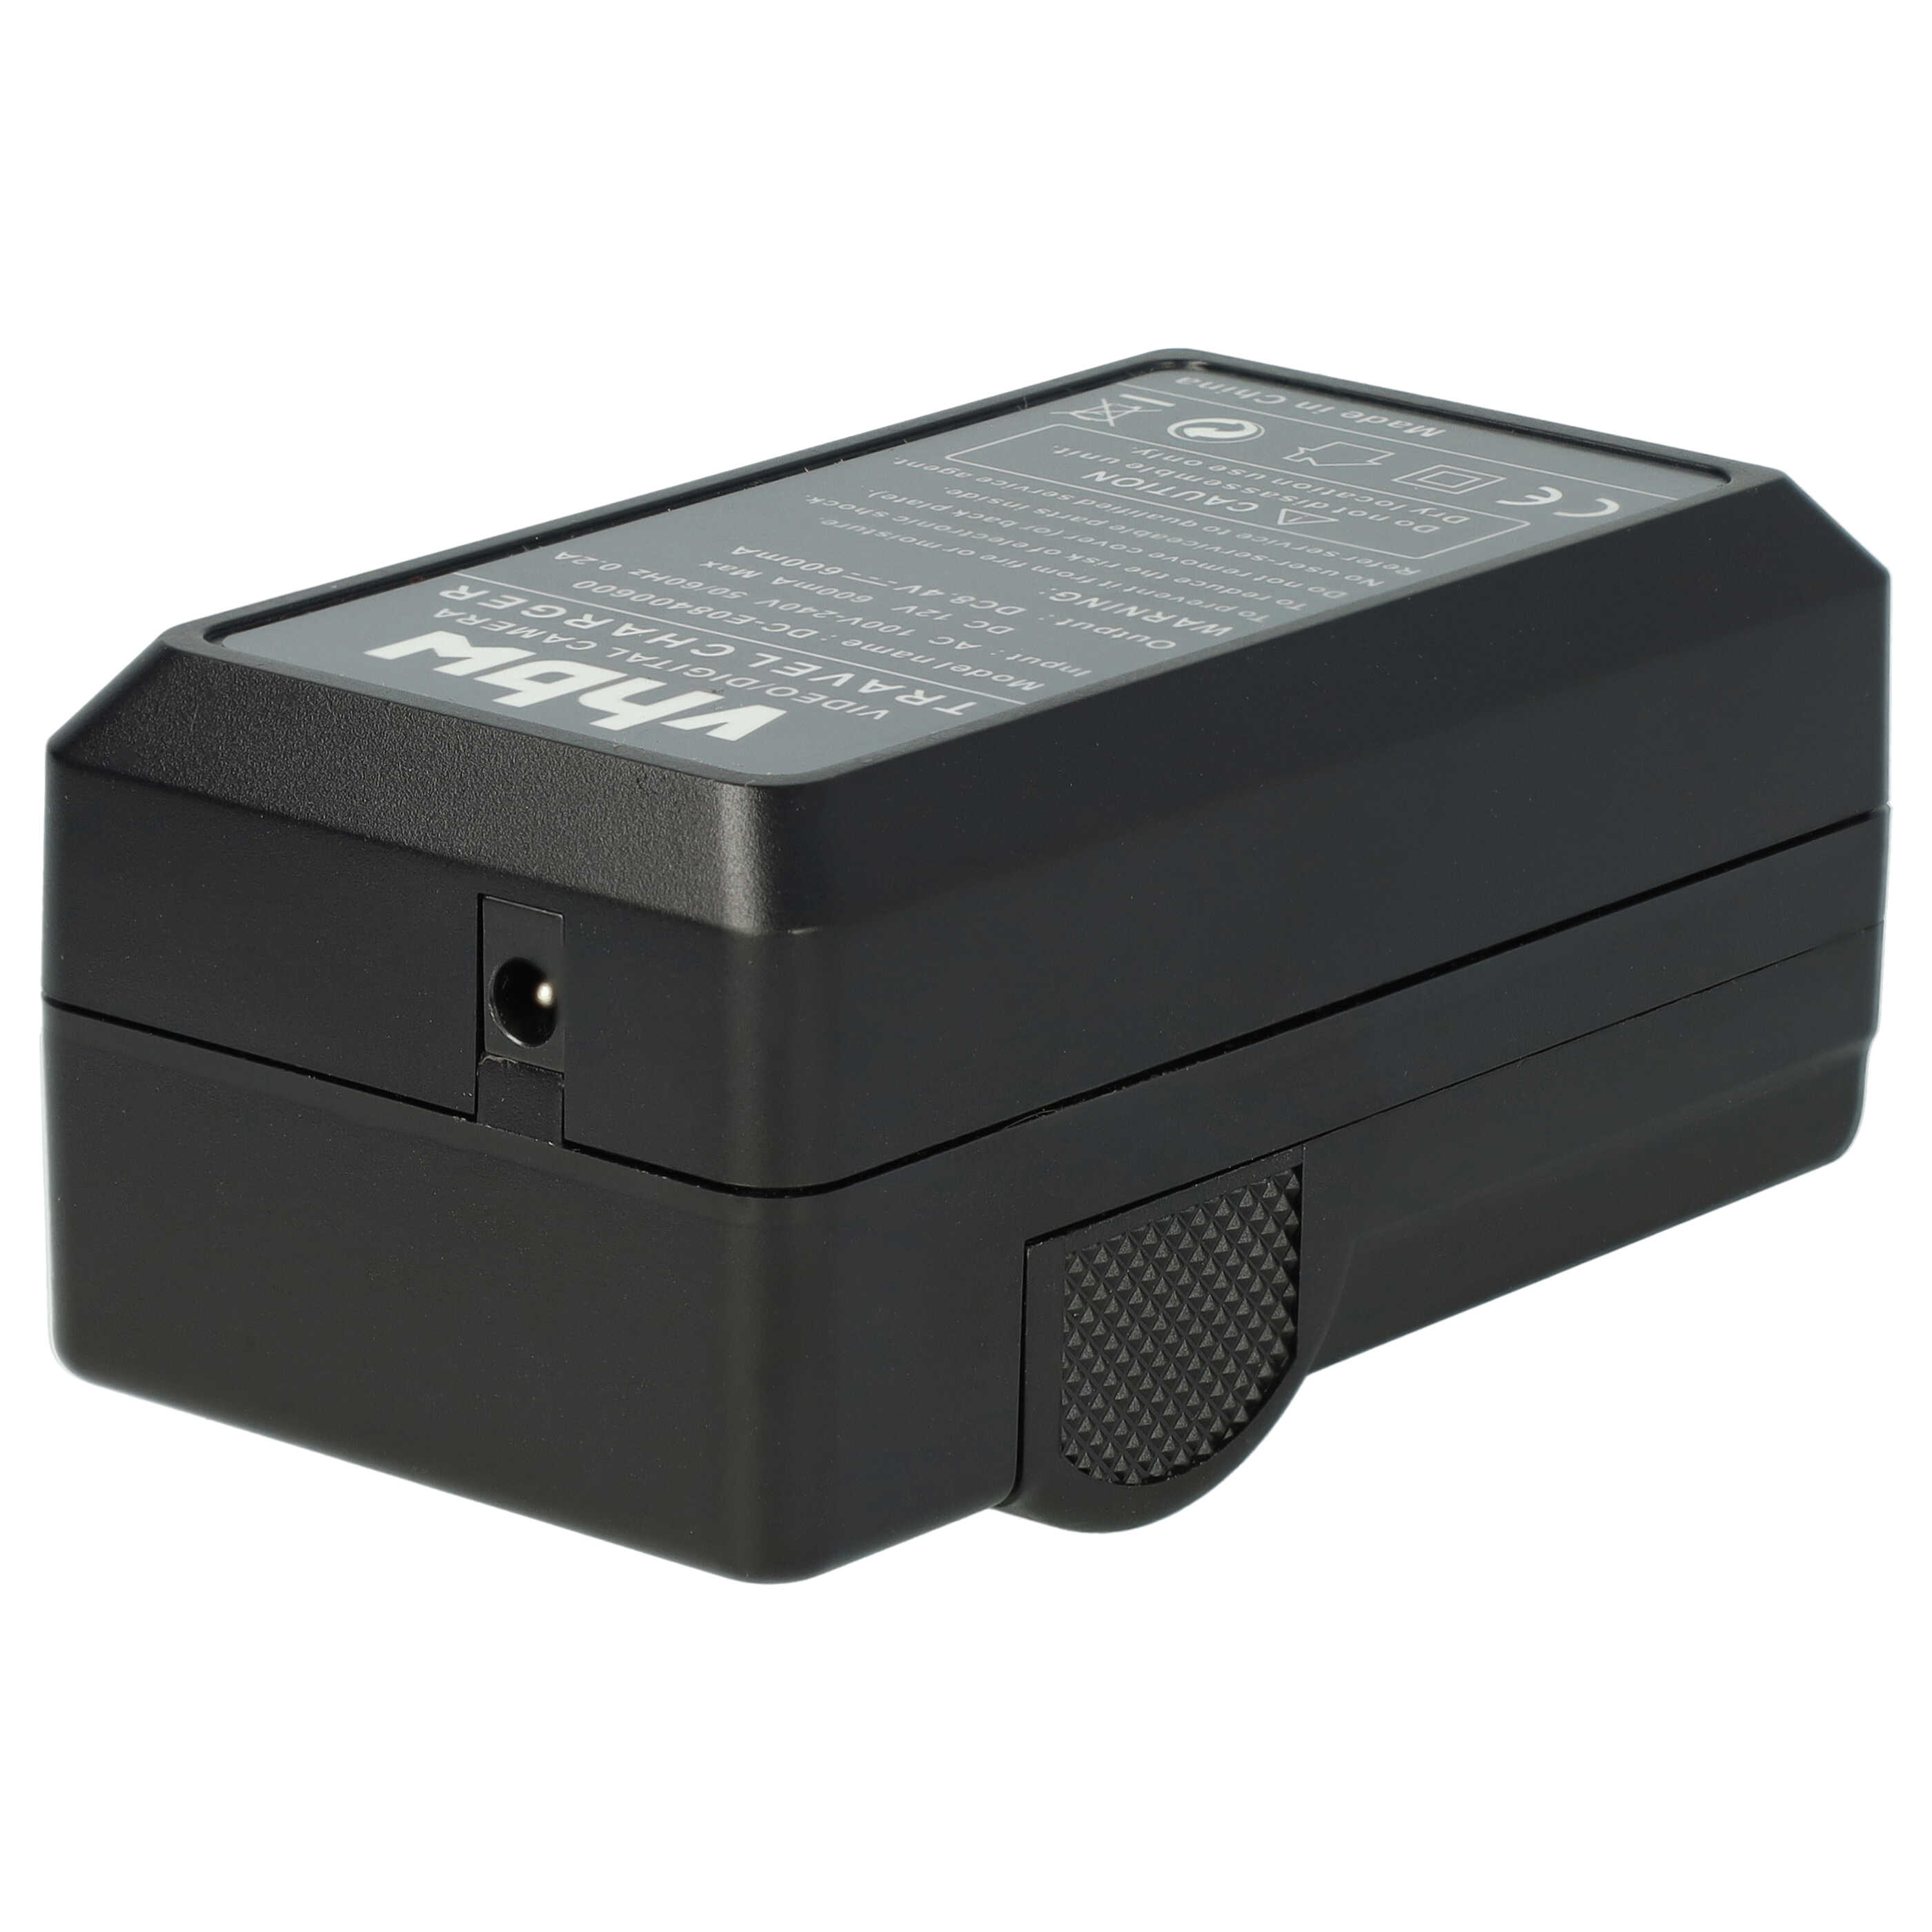 Akku Ladegerät passend für Coolpix P1000 Kamera u.a. - 0,6 A, 8,4 V